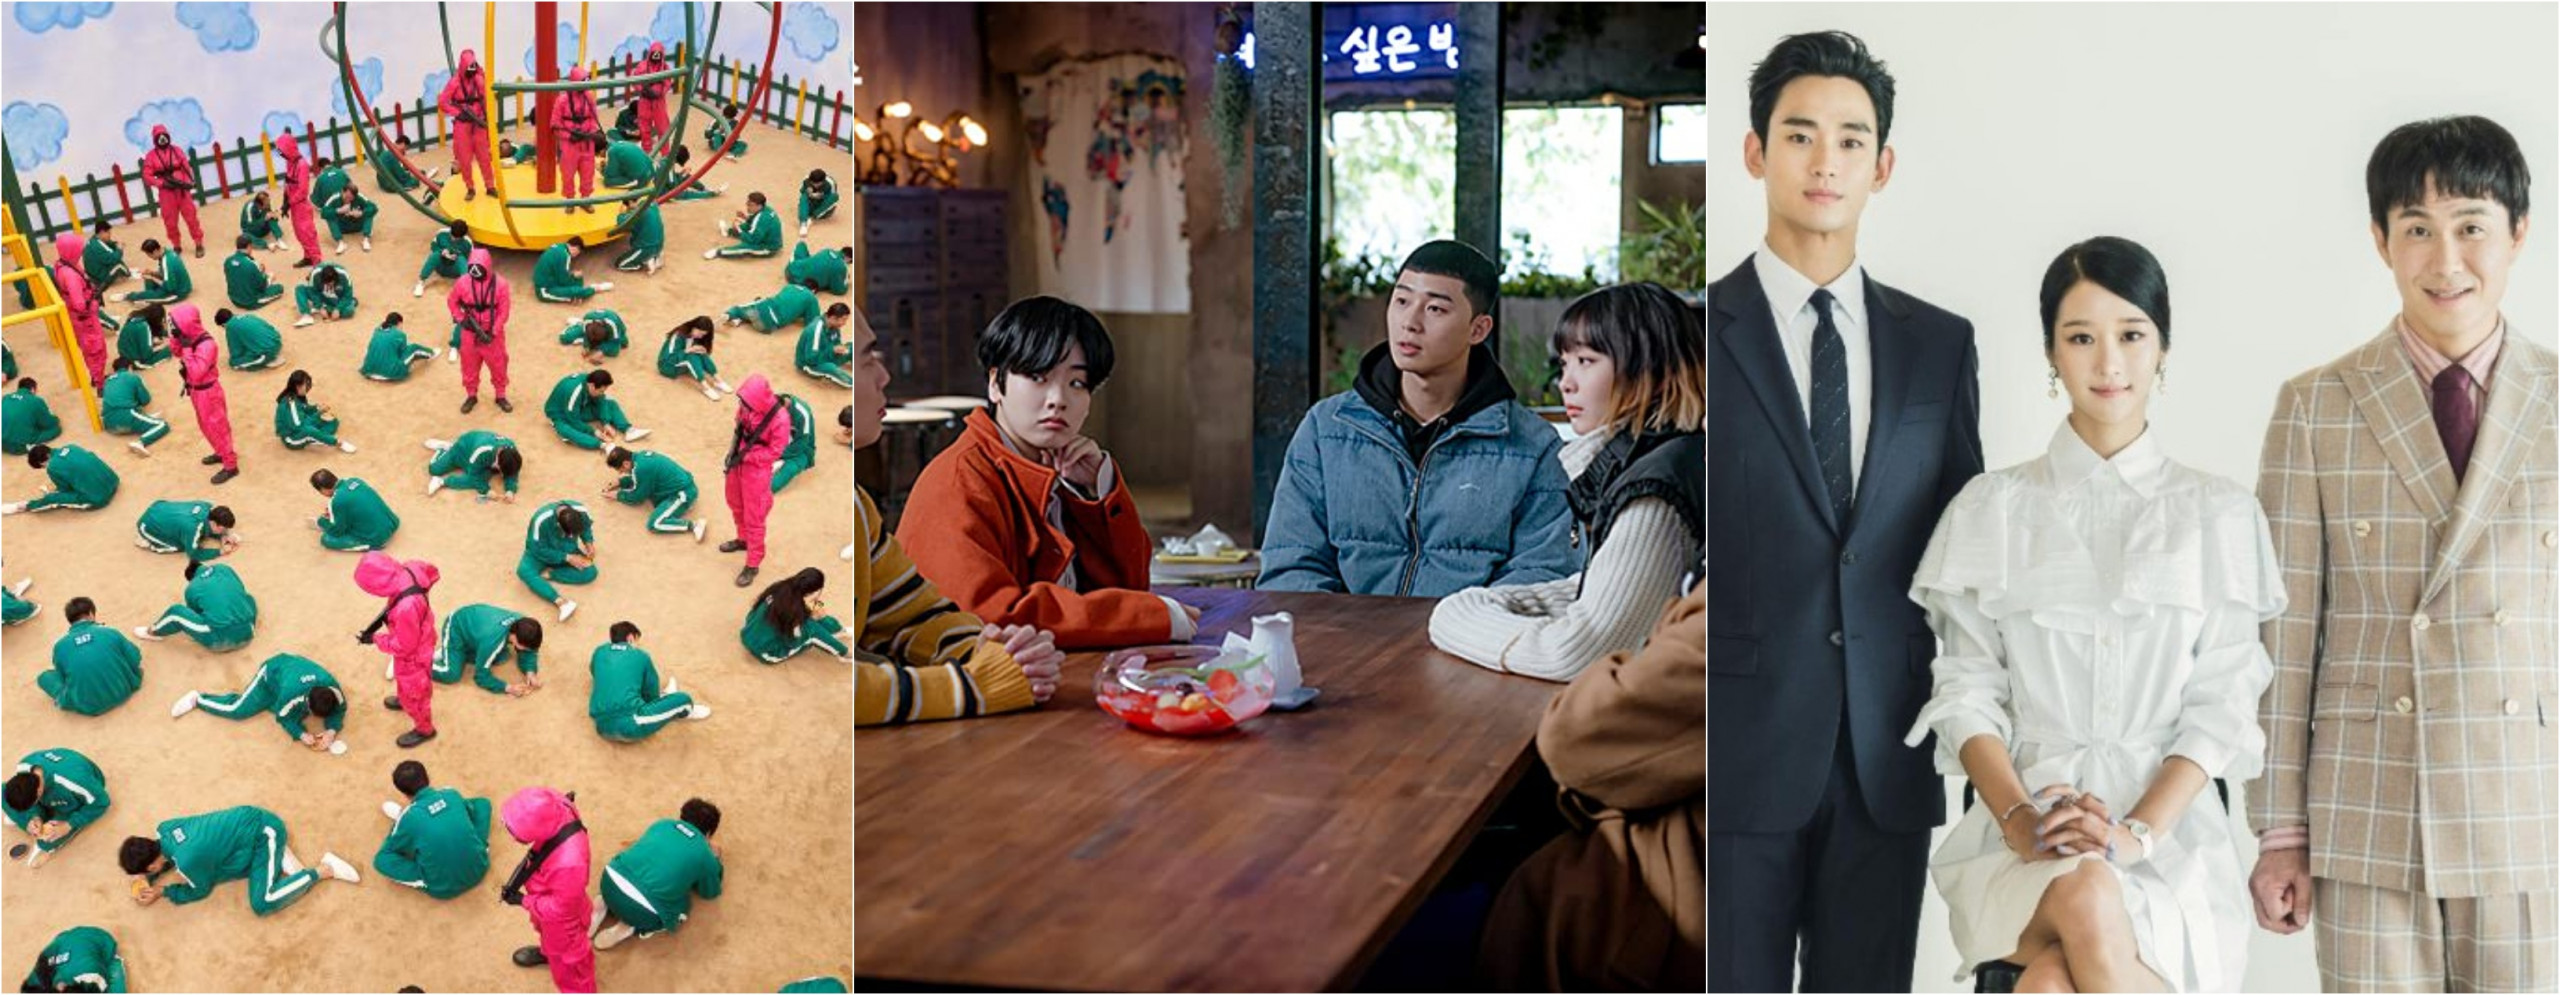 Netflix Korean Dramas Images